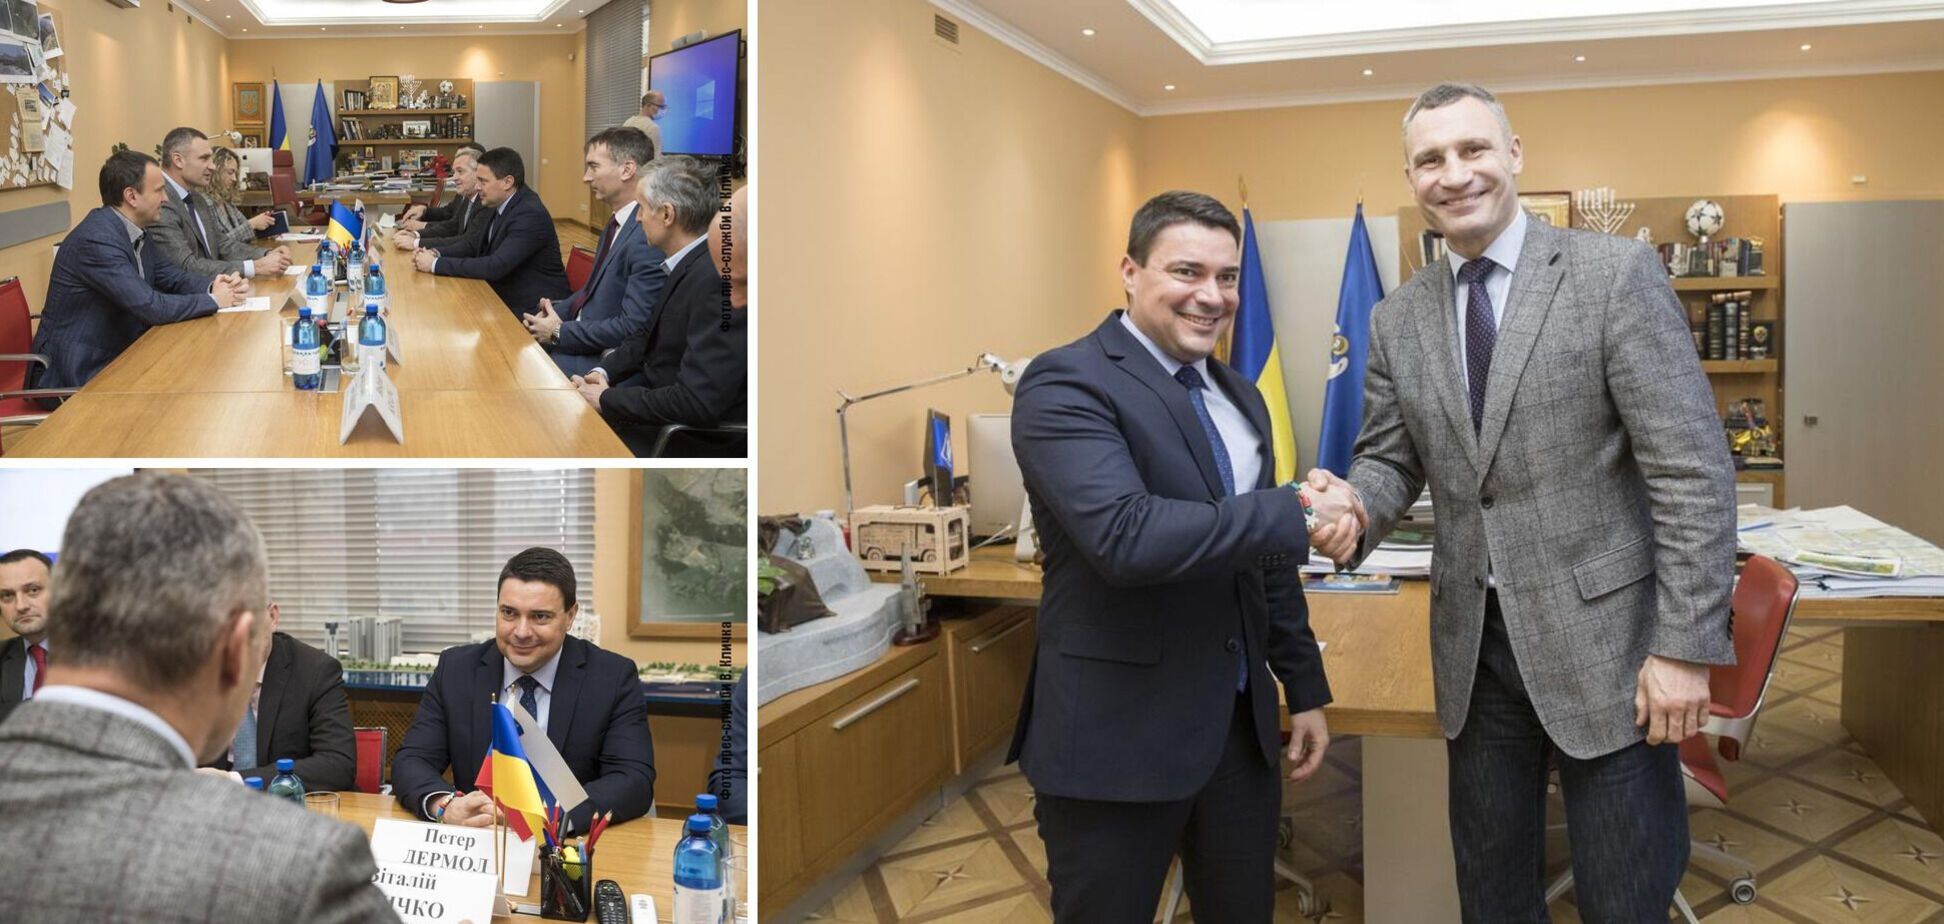 Кличко зустрівся з мером словенського муніципалітету Веленьє та обговорив впровадження енергоощадних технологій у Києві